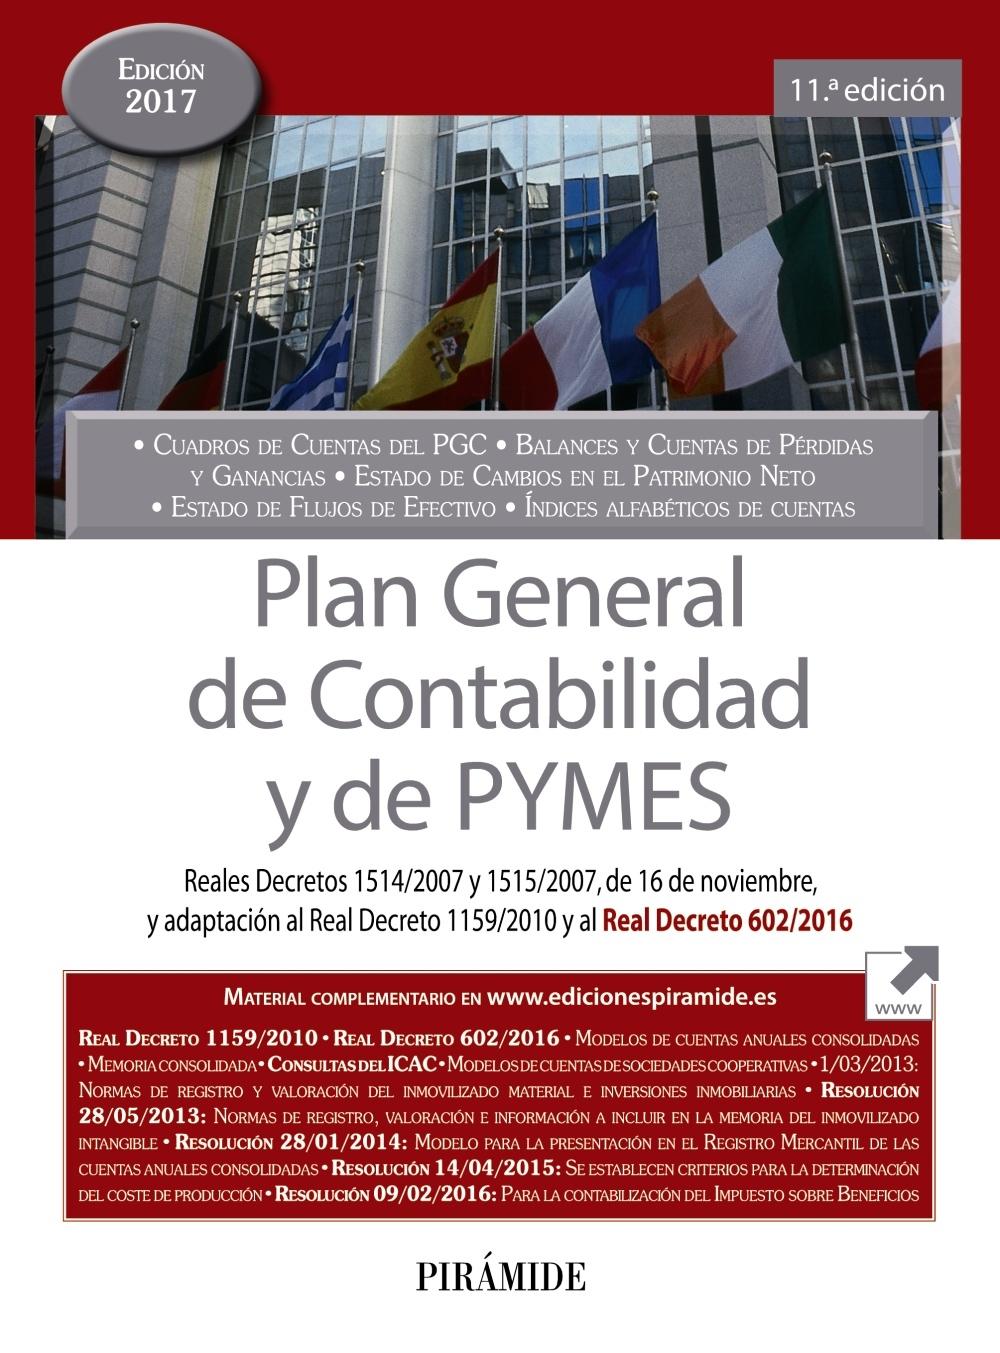 PLAN GENERAL DE CONTABILIDAD Y DE PYMES "REALES DECRETOS 1514/2007 Y 1515/2007, DE 16 DE NOVIEMBRE, Y ADAPTACIÓN"